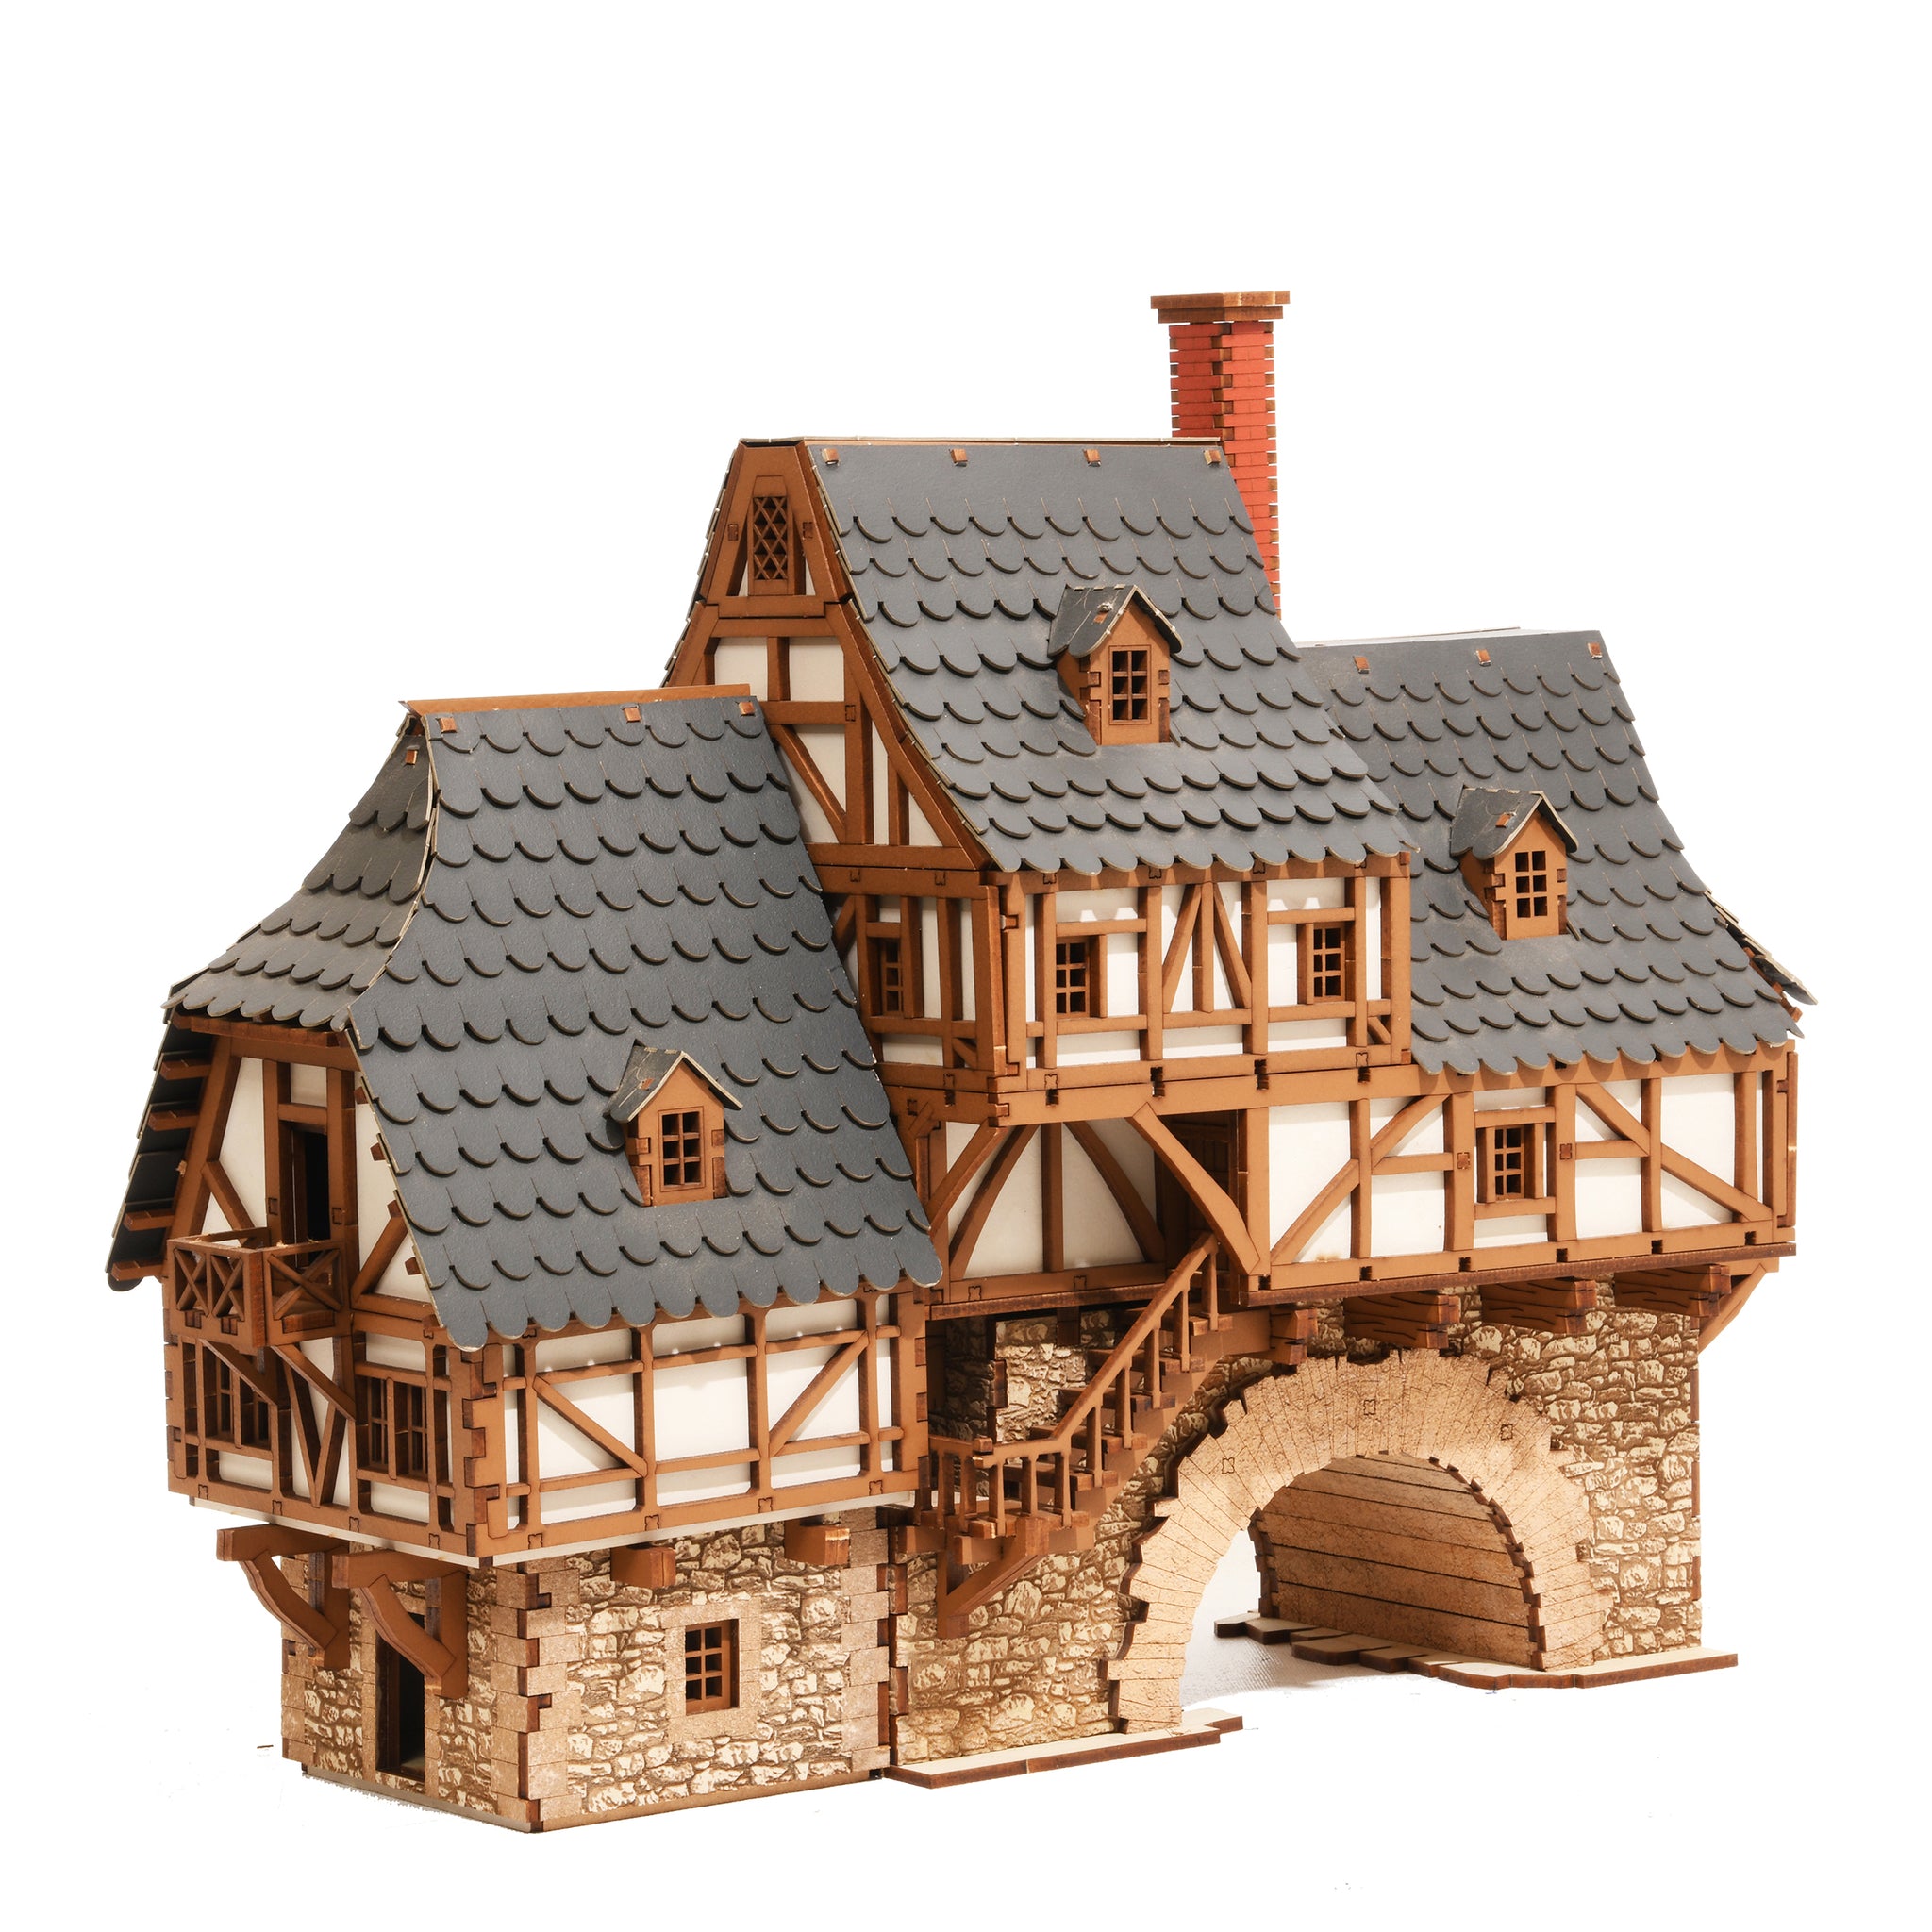 Testors Wood Glue - House of Miniatures Builder